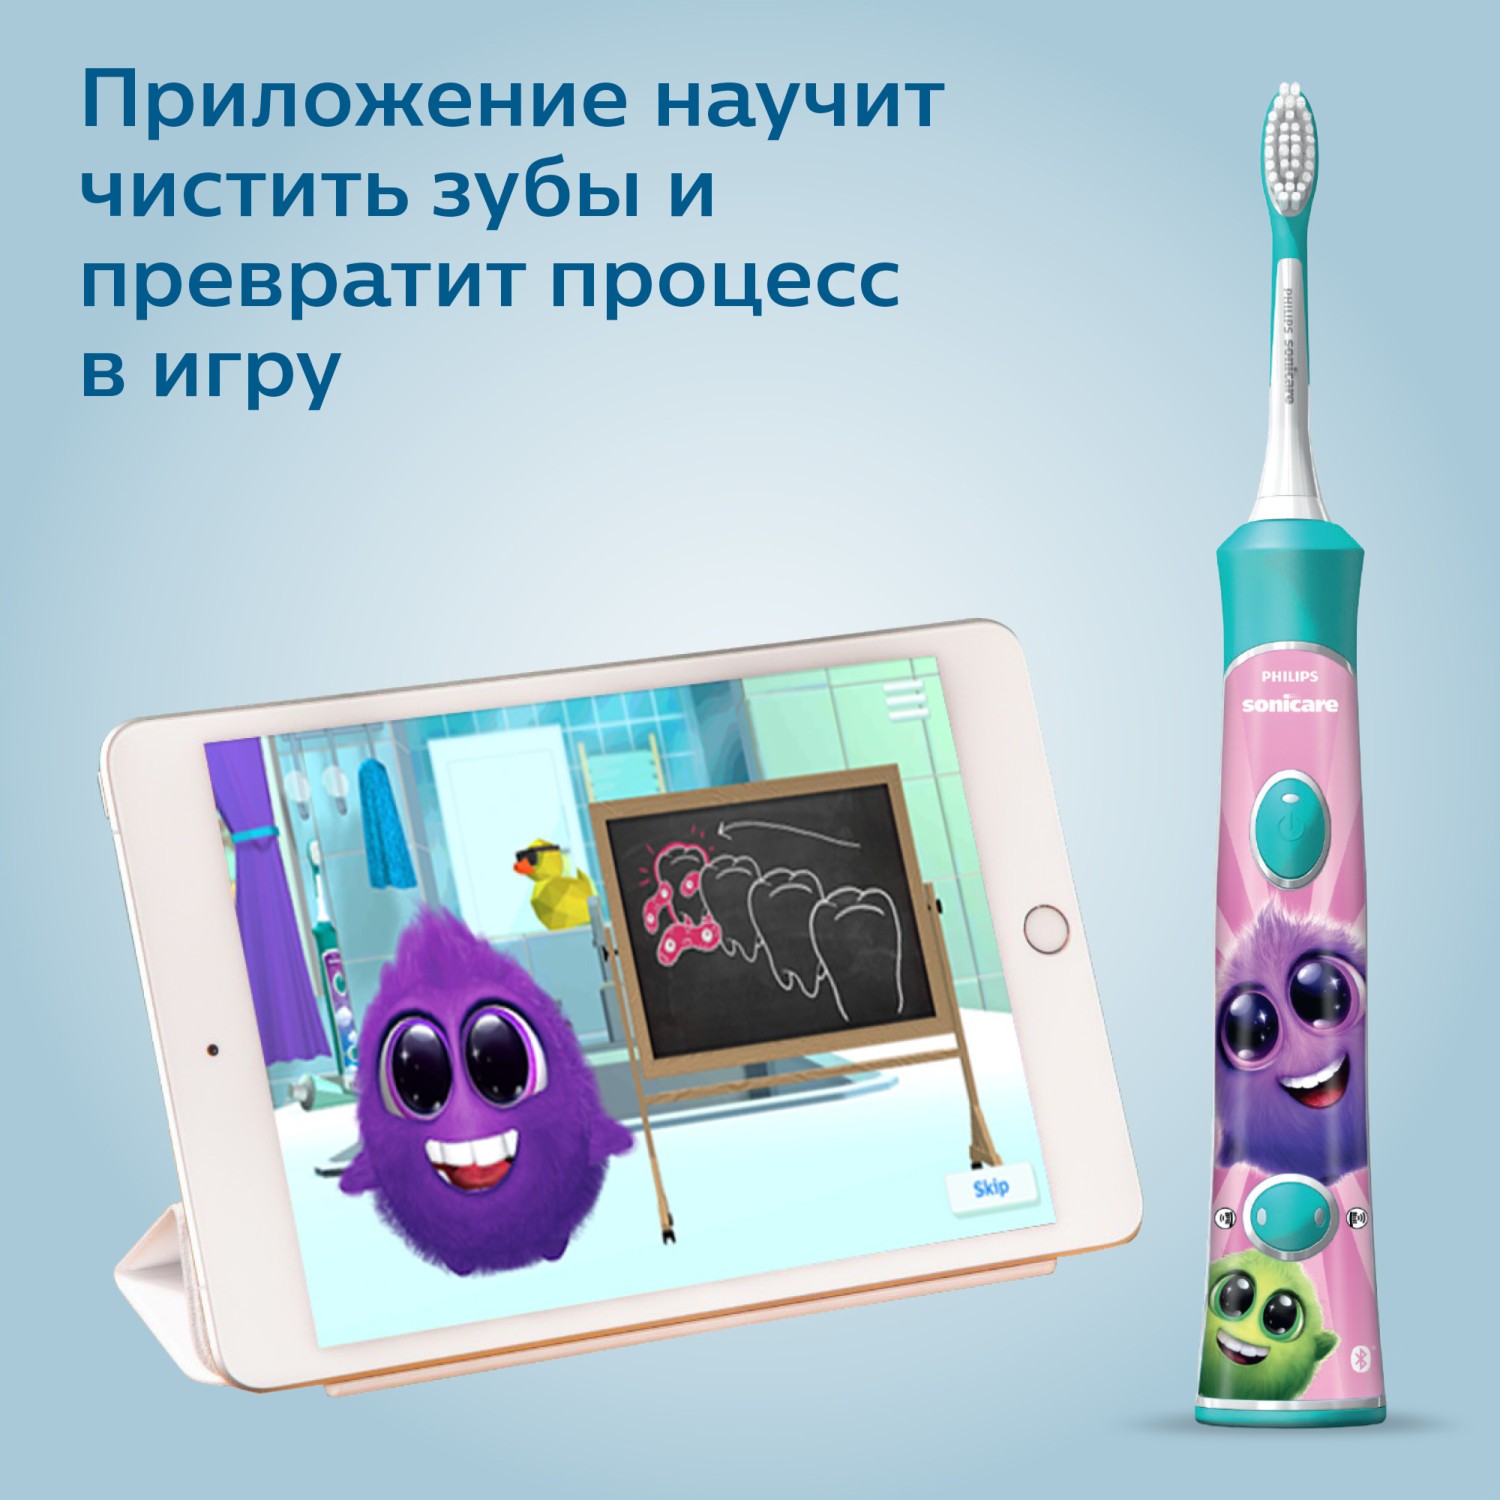 Зубная щетка Philips Sonicare For Kids электрическая с поддержкой Bluetooth HX6322/04 - фото 8